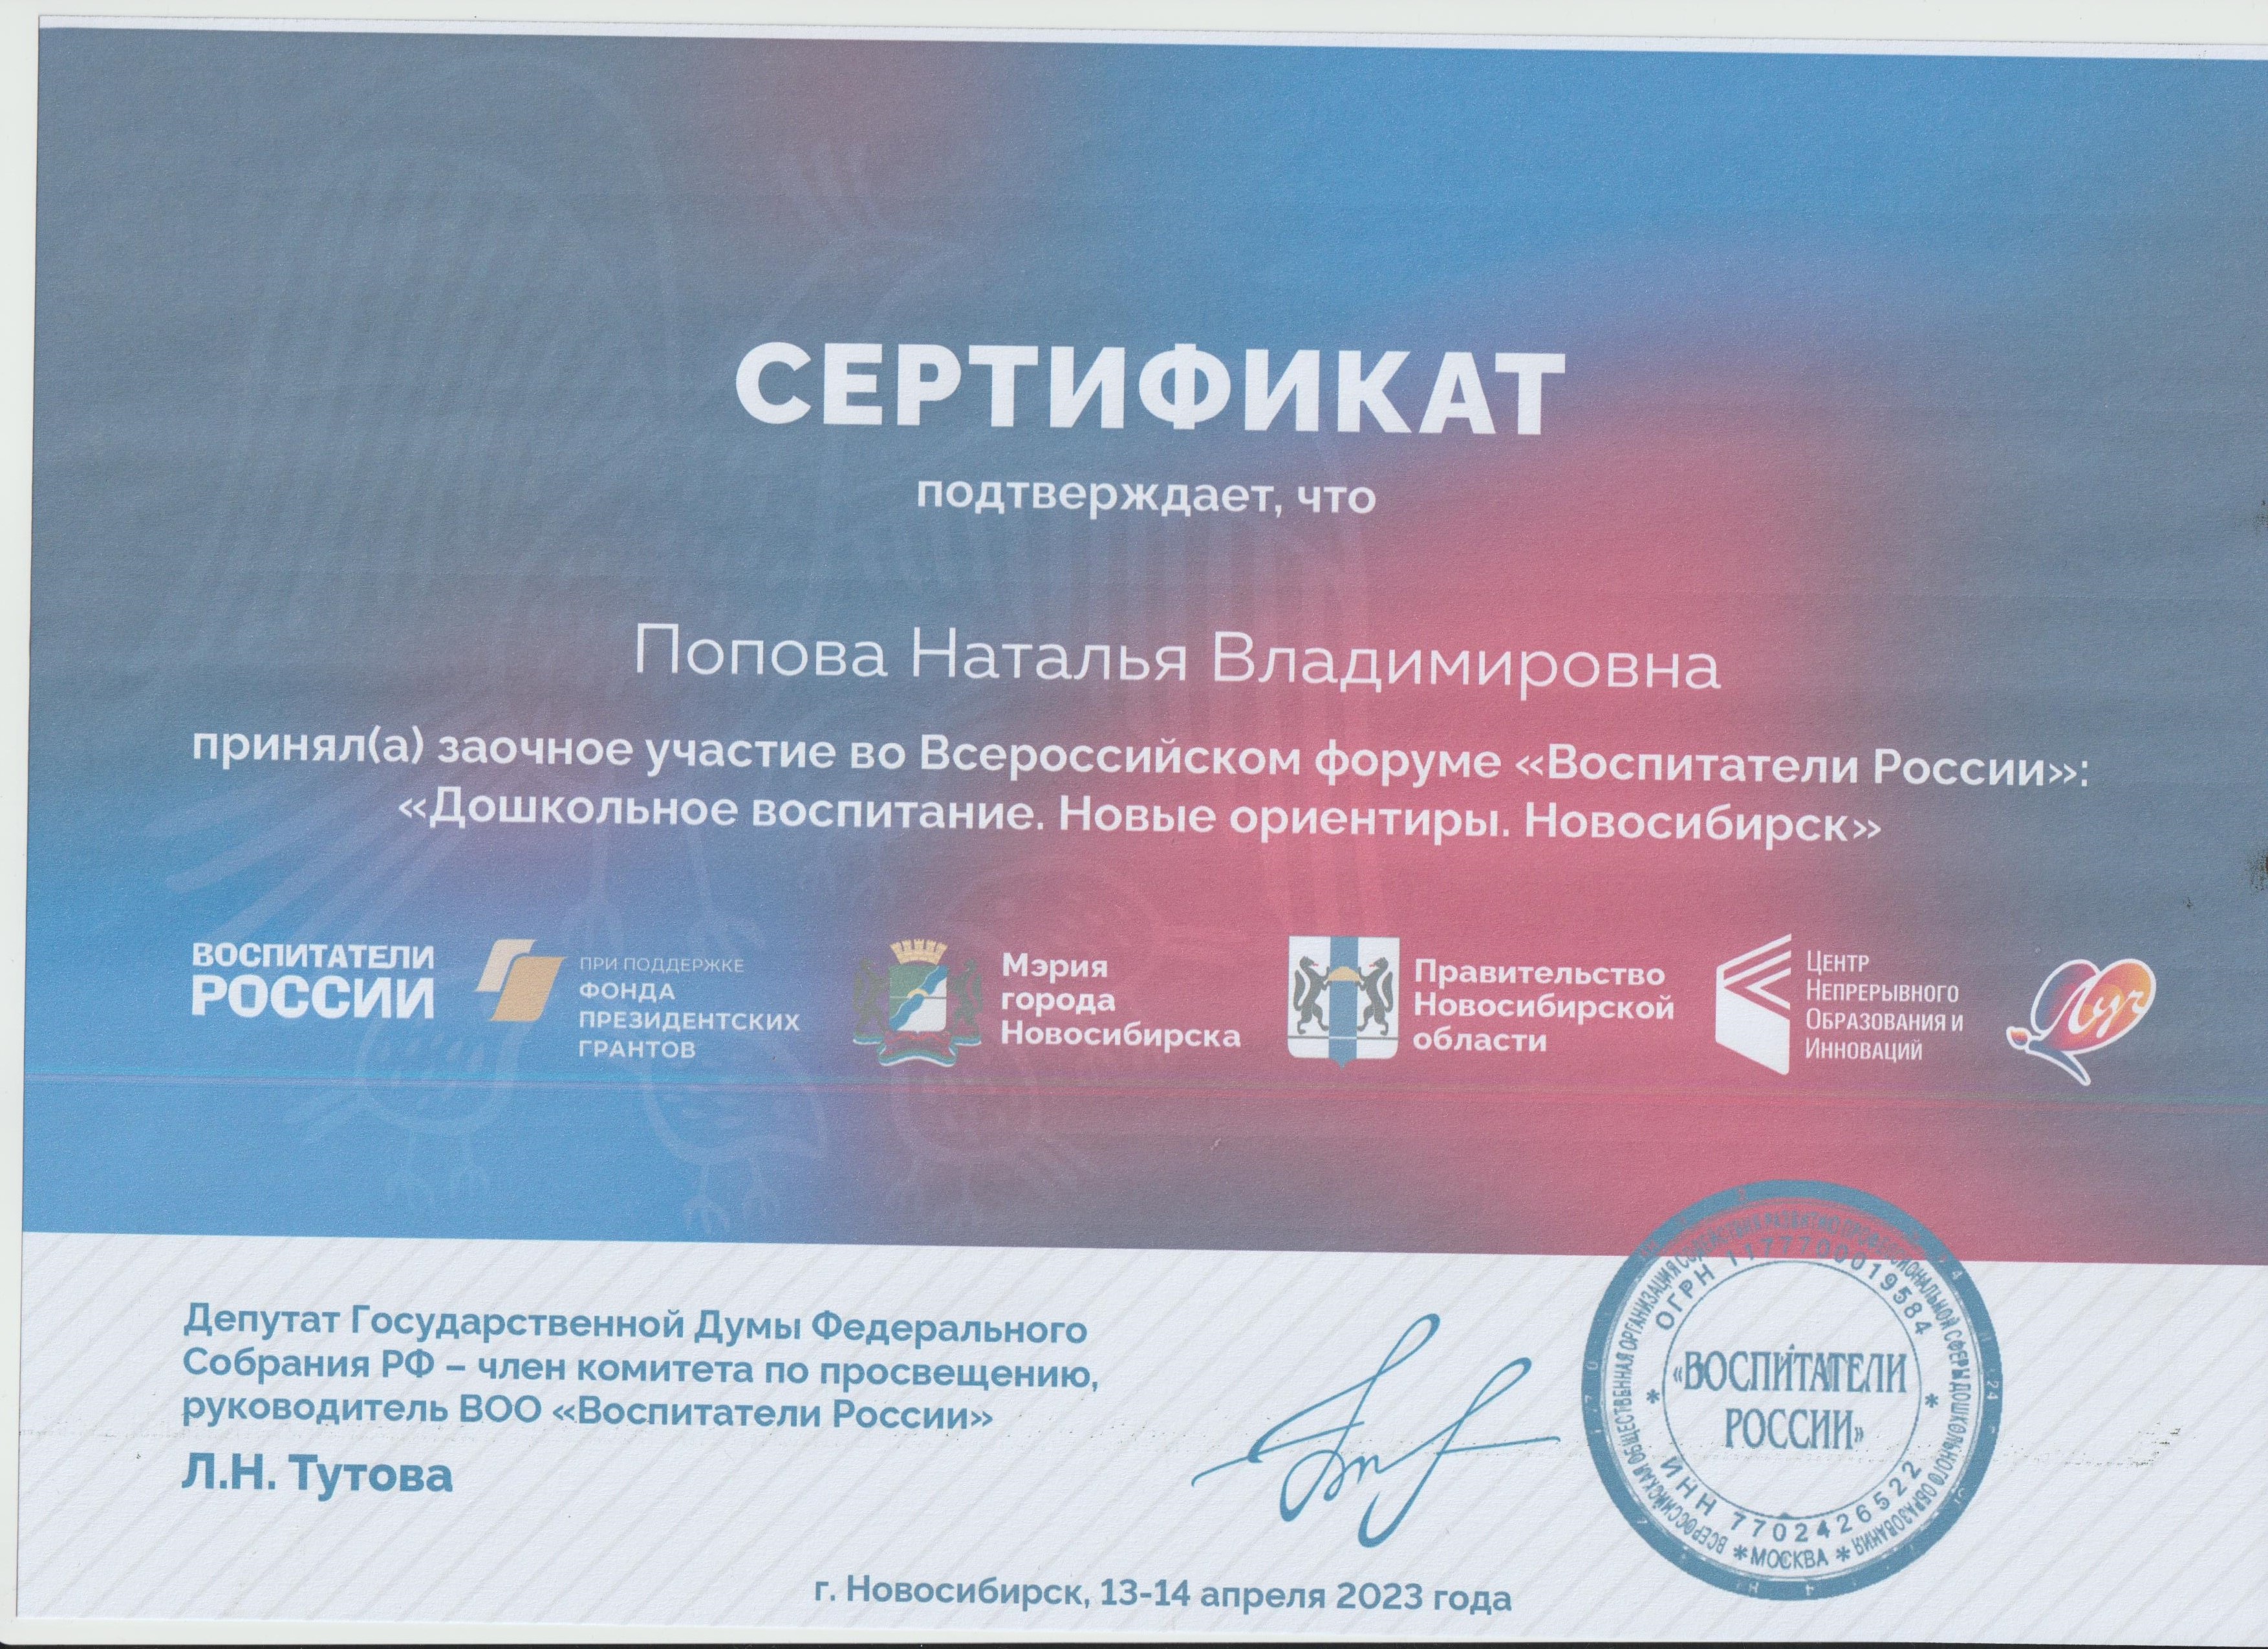 Воспитатели россии чеченская республика сертификат. Сертификат слушателя. Сертификат слушателя конференции.